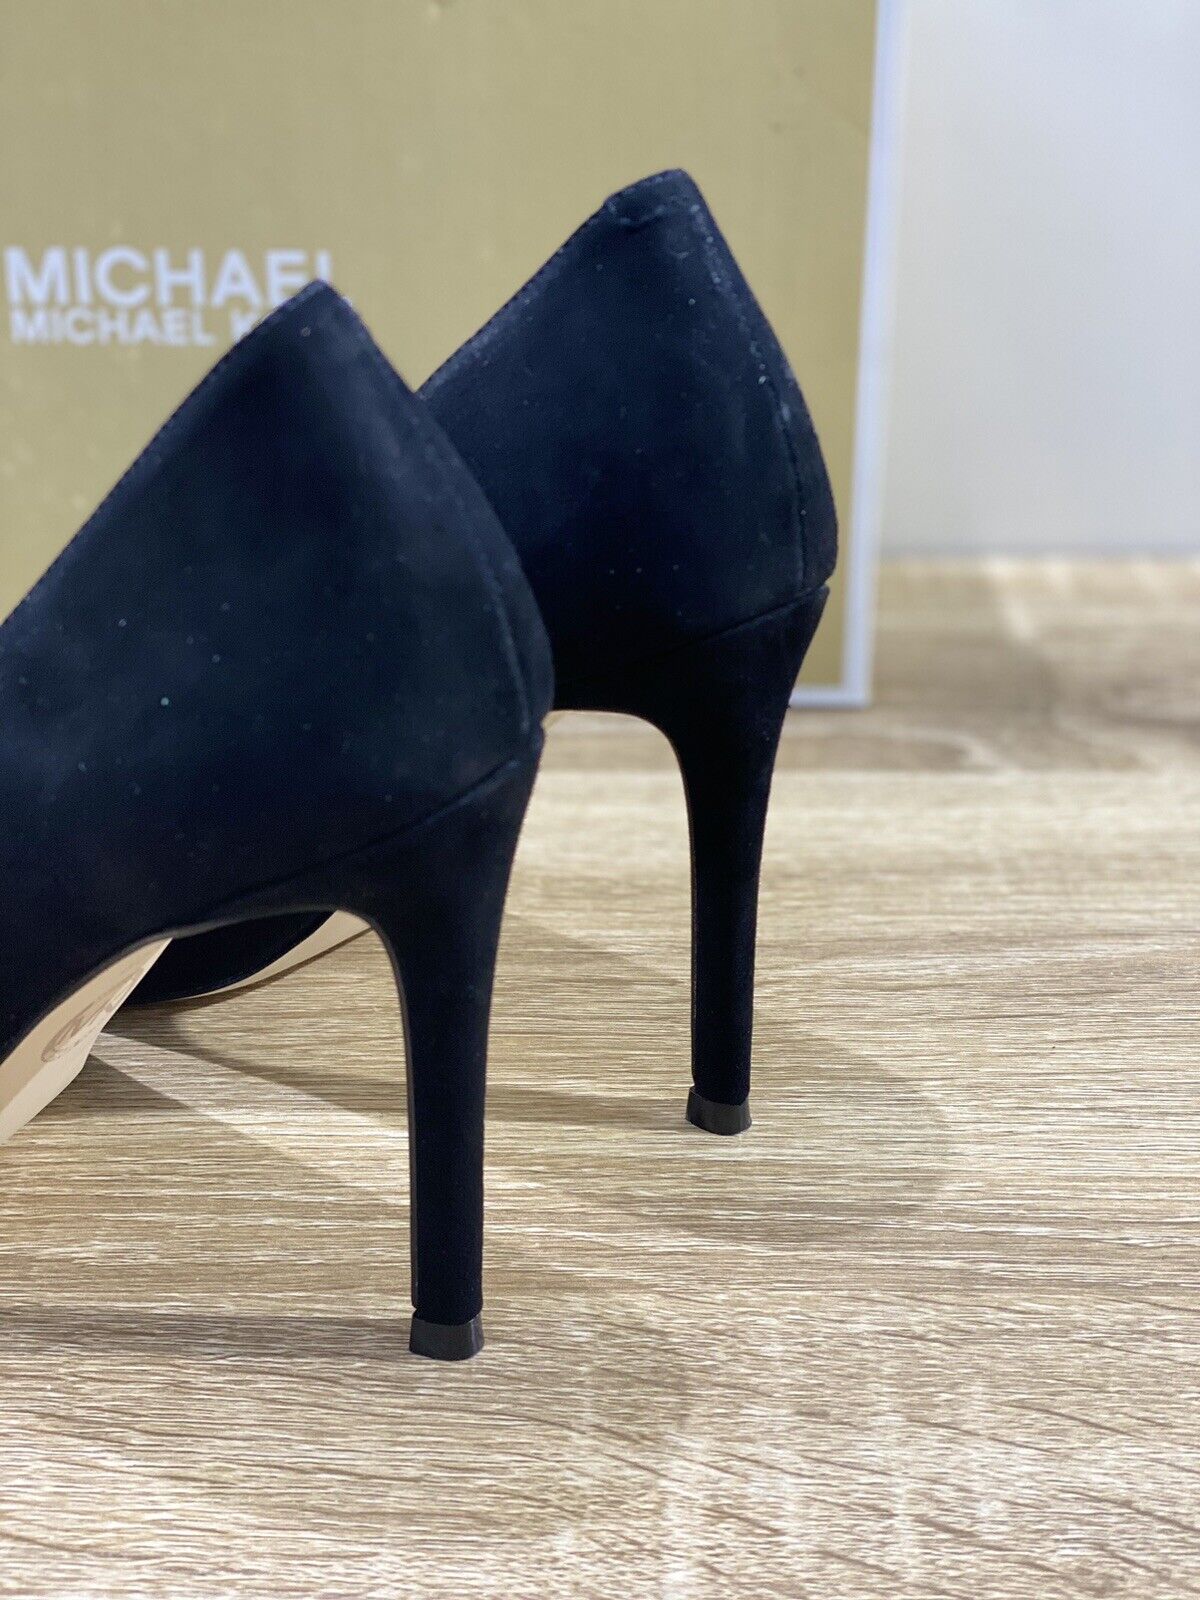 Michael Kors Decollete’ donna viola pump pelle suede nero luxury shoes 39